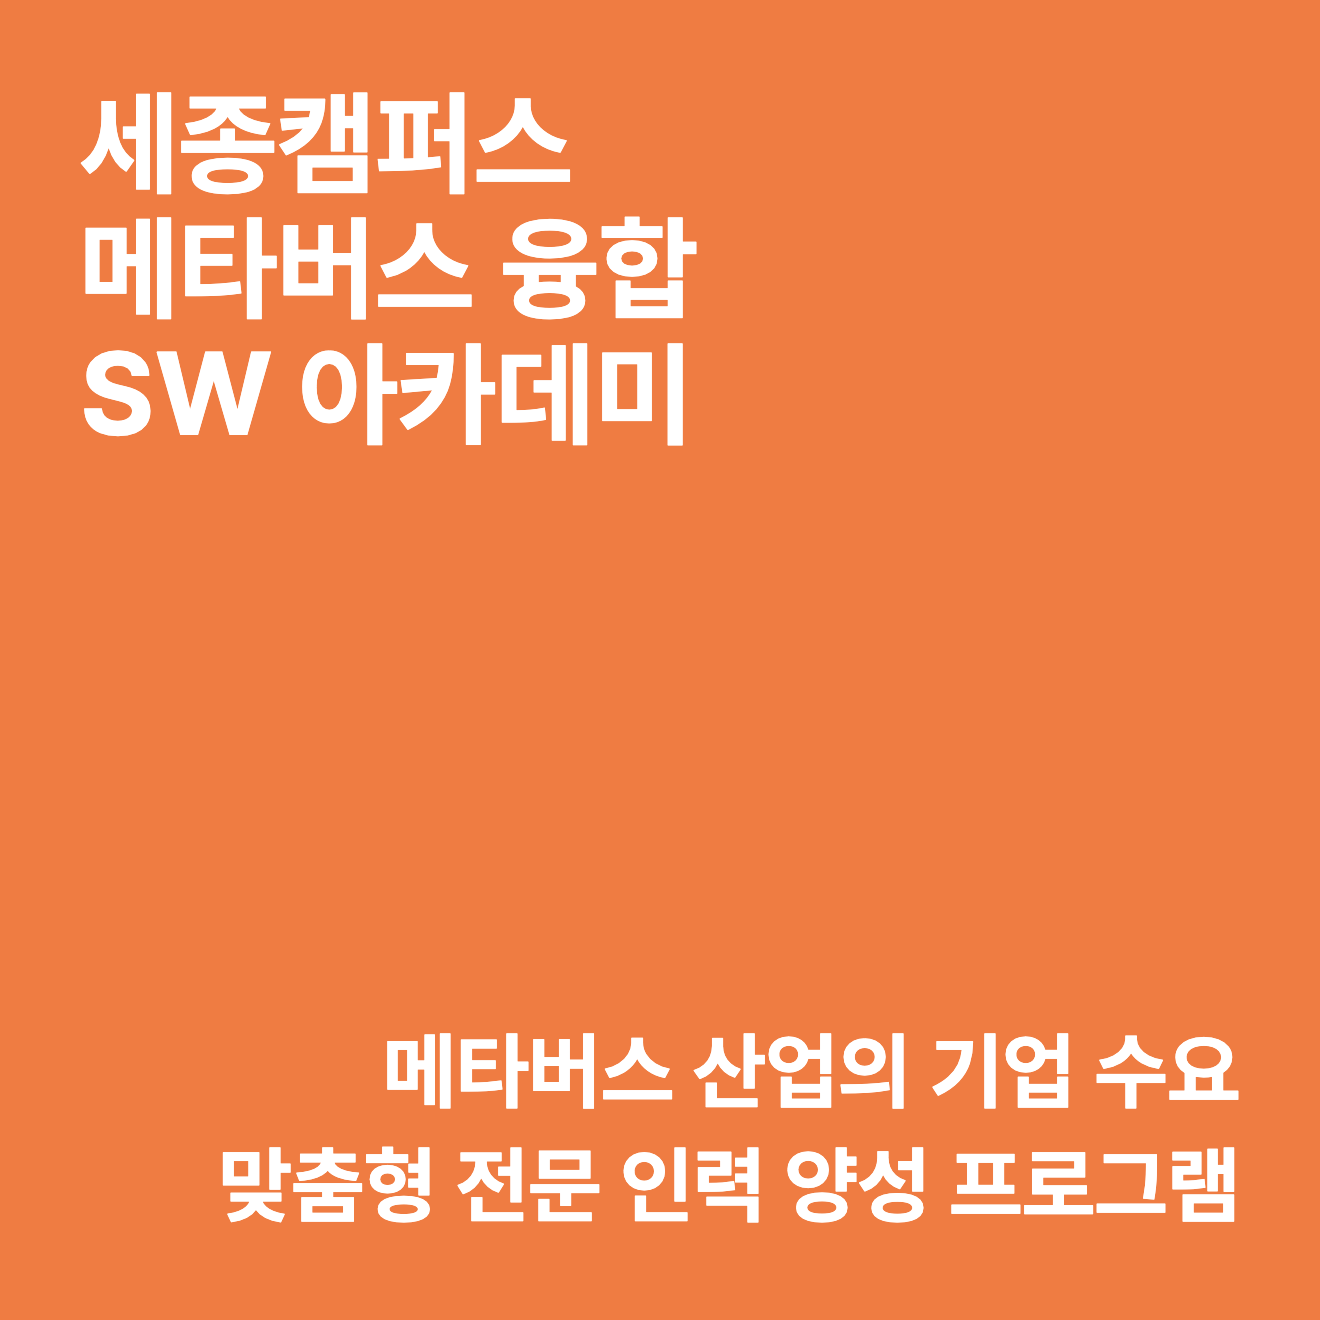 홍익대학교 세종캠퍼스 메타버스 융합 SW 아카데미